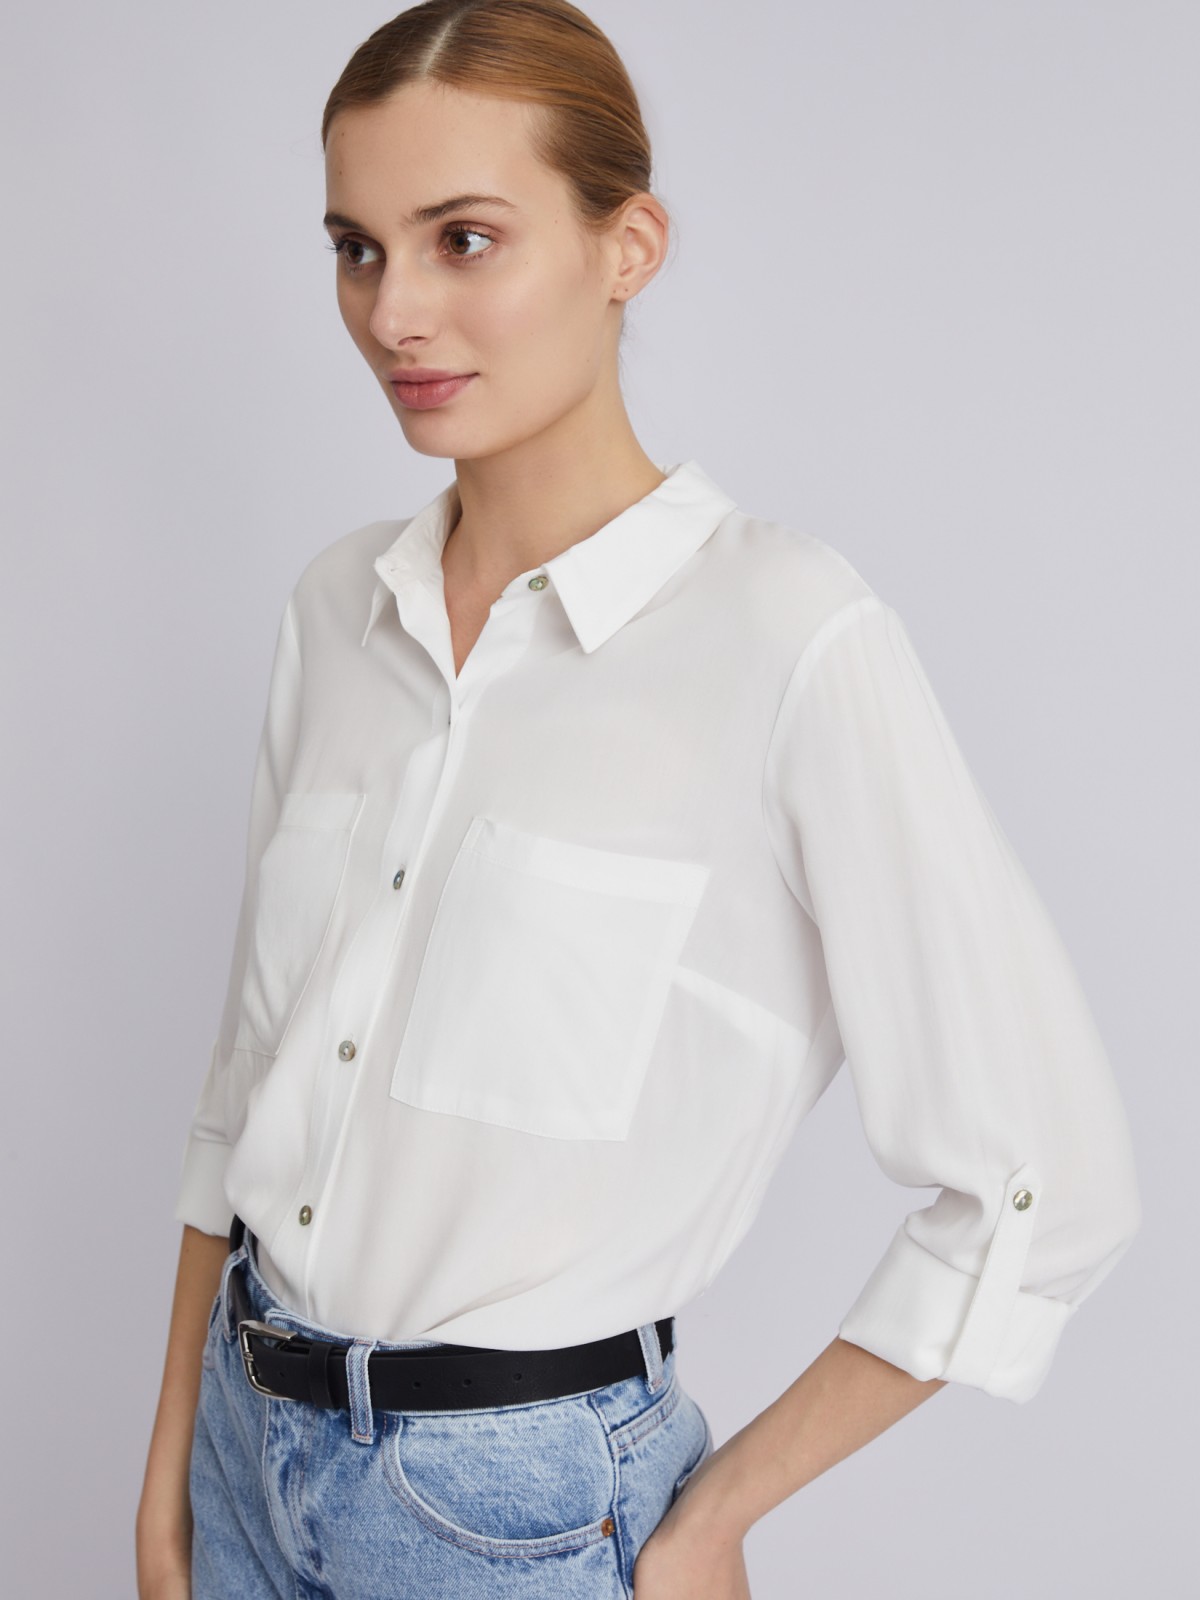 Офисная рубашка из вискозы с карманами и подхватами на рукавах zolla 023311162052, цвет молоко, размер XS - фото 3